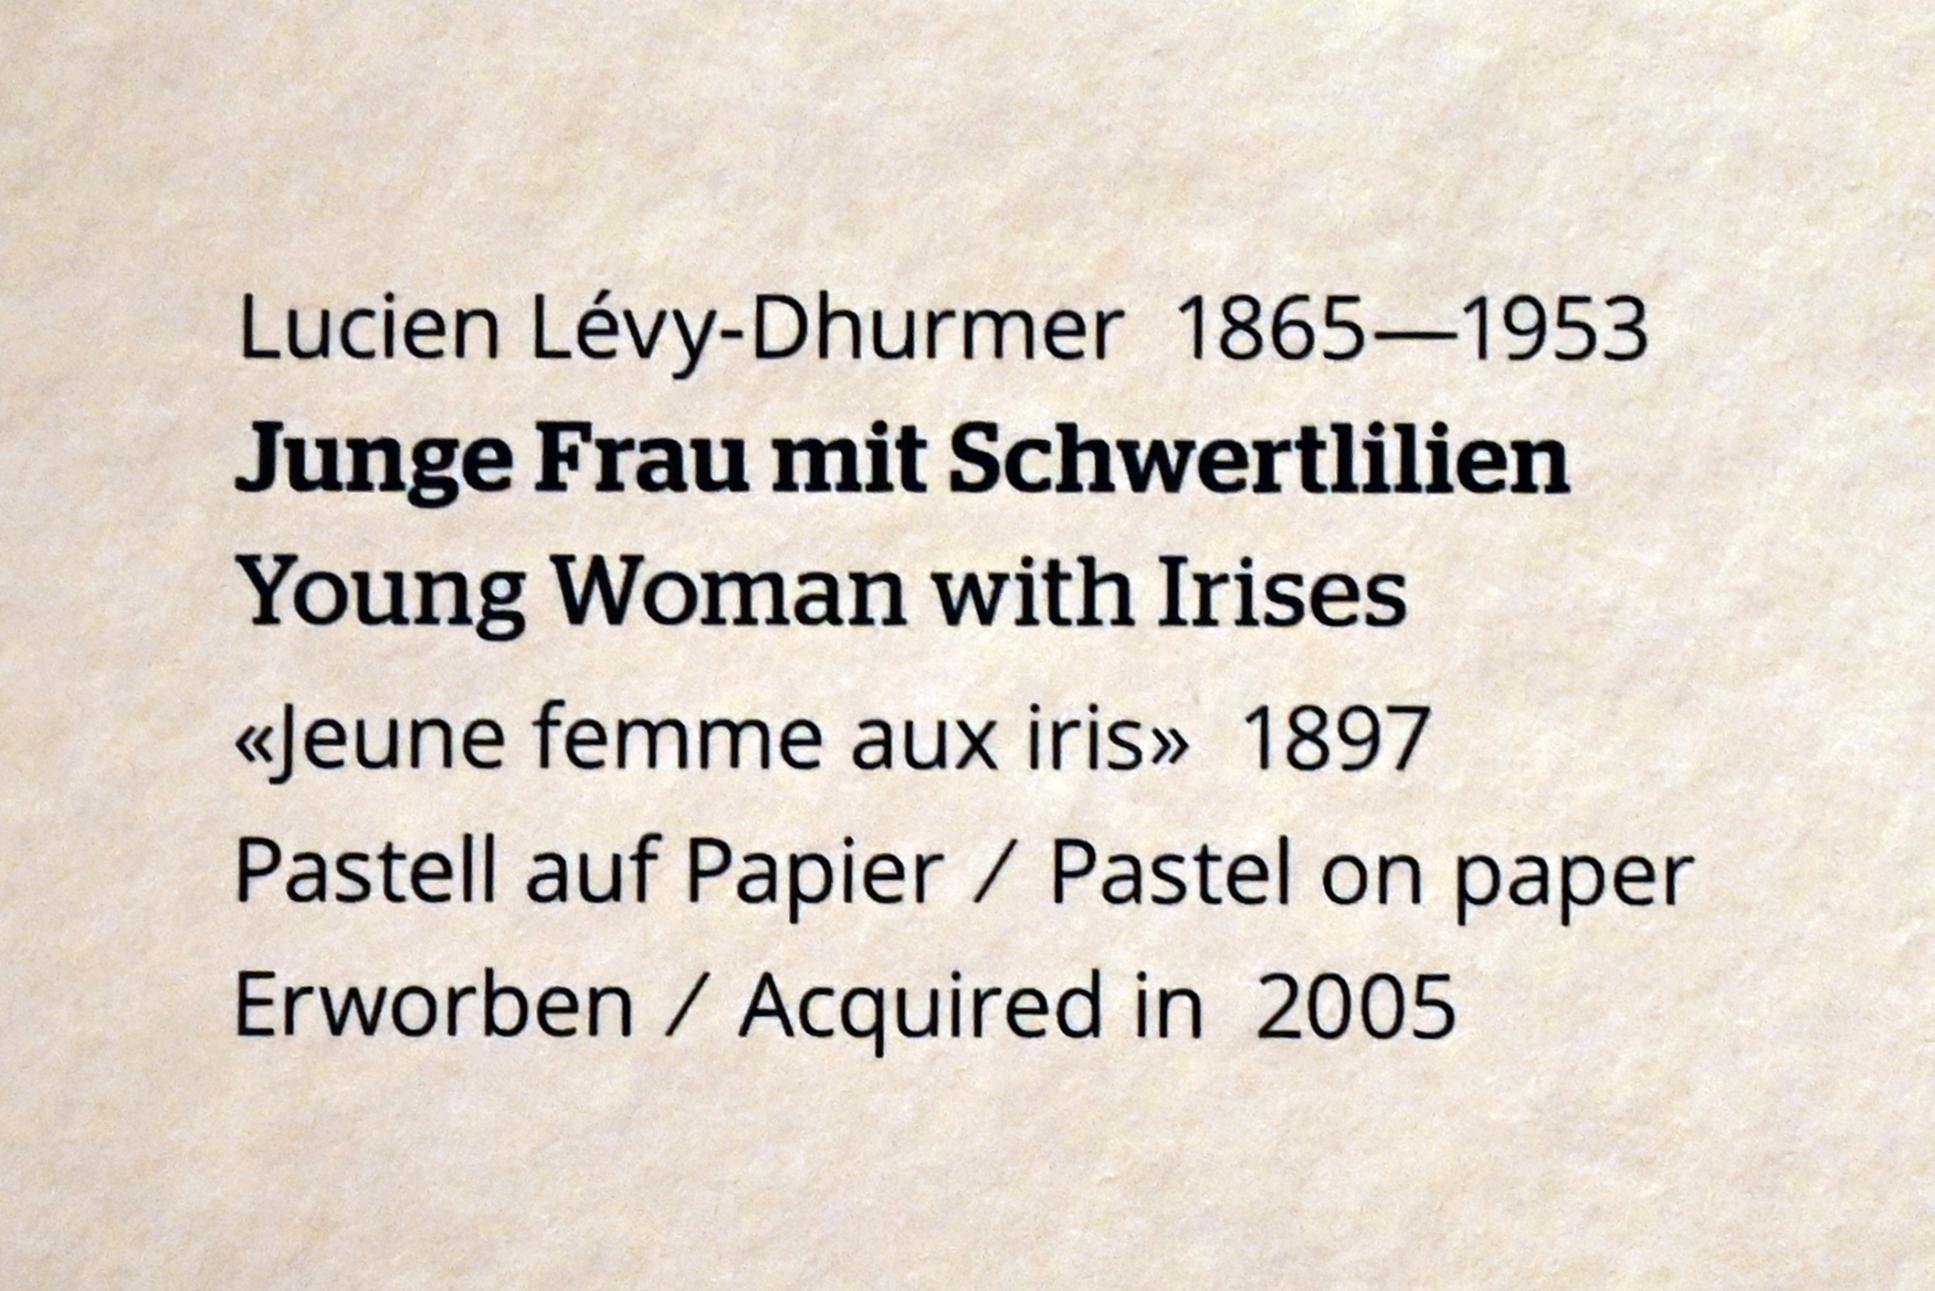 Lucien Lévy-Dhurmer (1897–1902), Junge Frau mit Schwertlilien, Wiesbaden, Museum Wiesbaden, Jugendstil, 1897, Bild 2/2